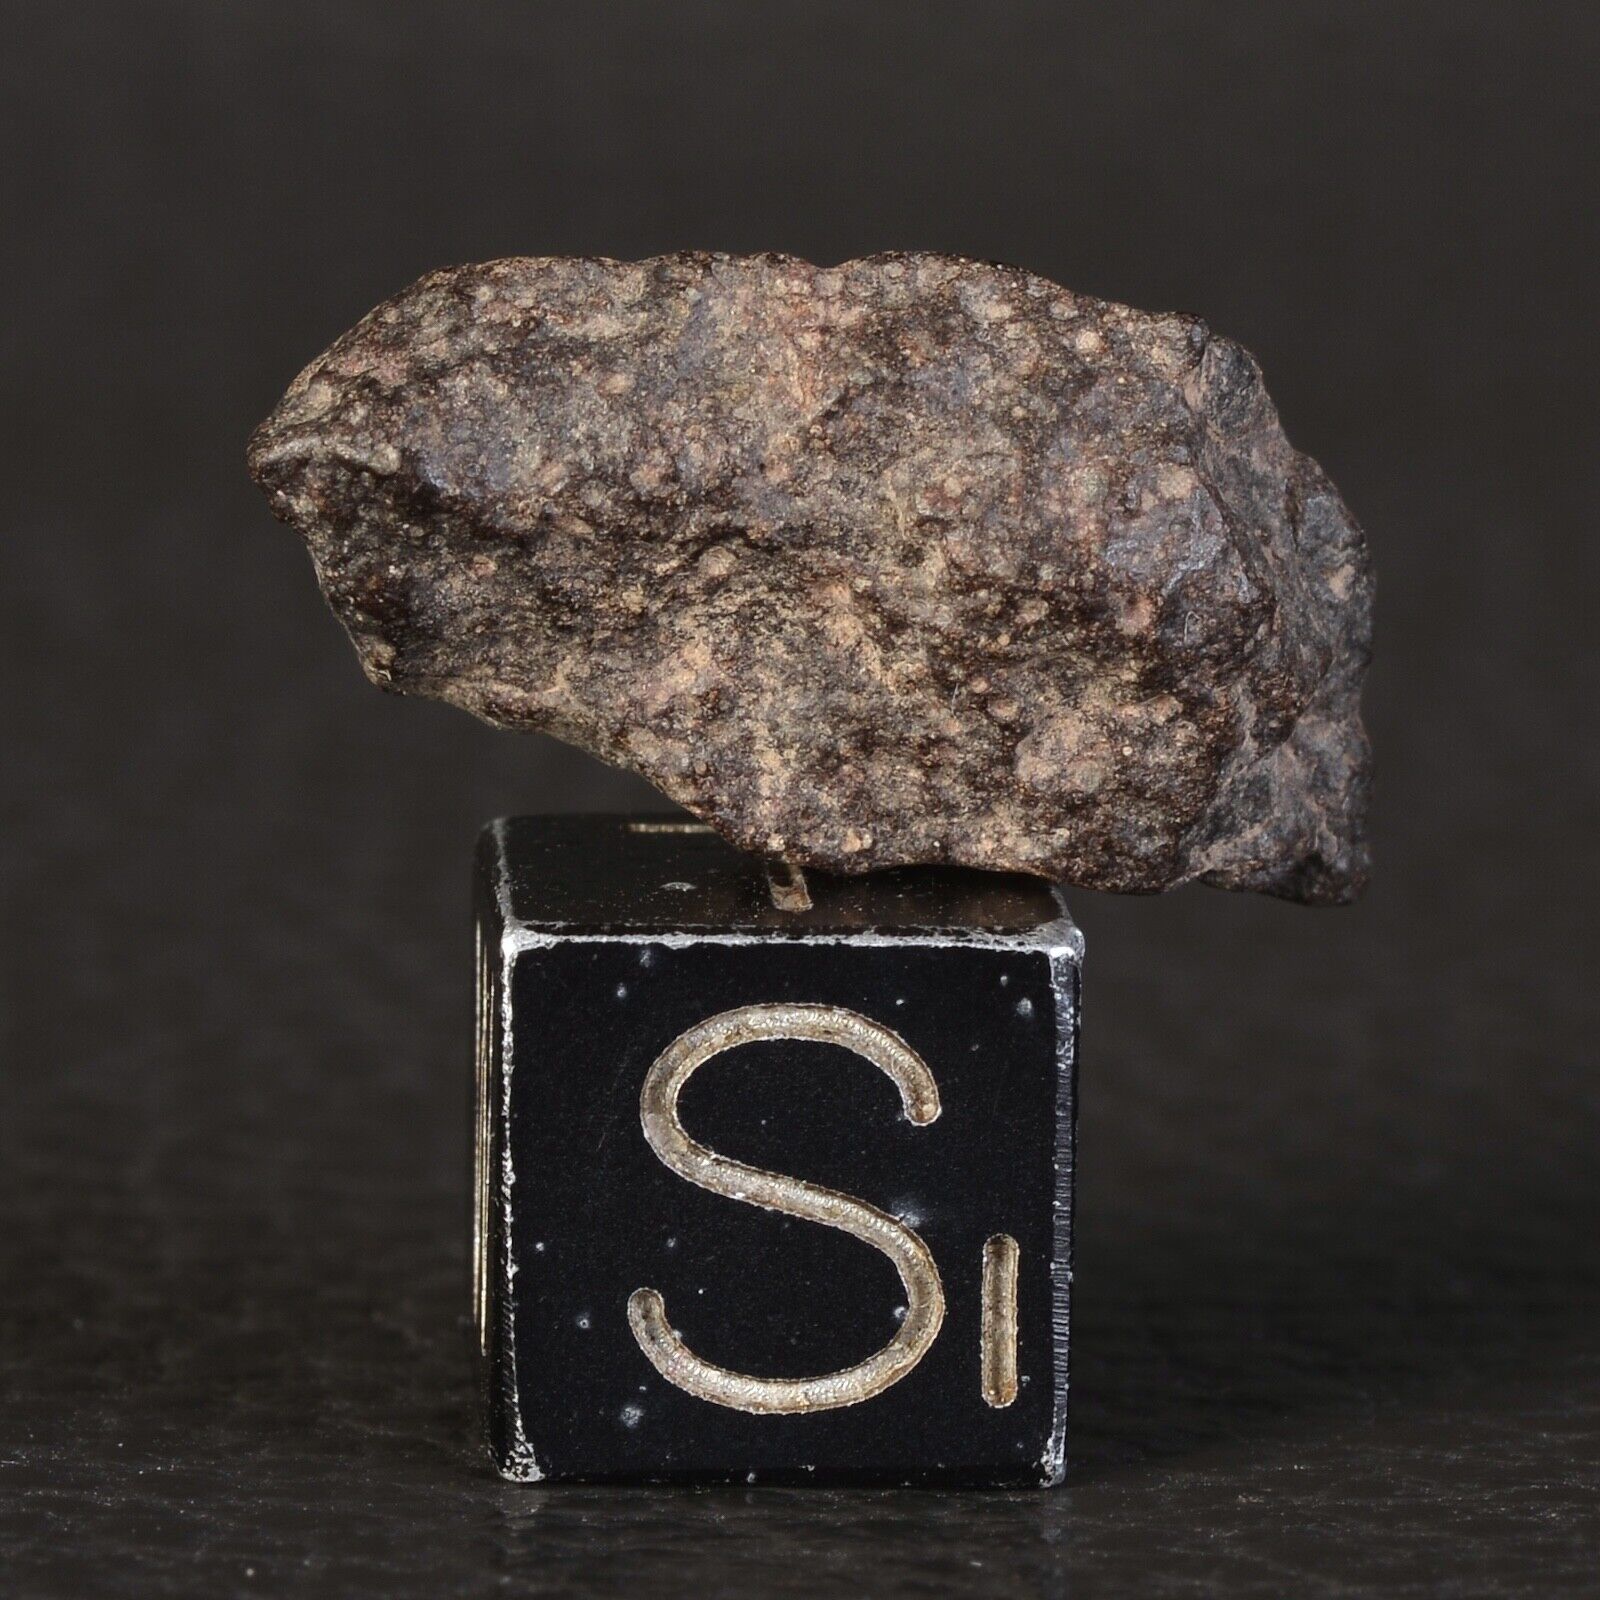 NWA 11540 2.18g Carbon Chondrite Type CO3 Meteorite #e21.2-10